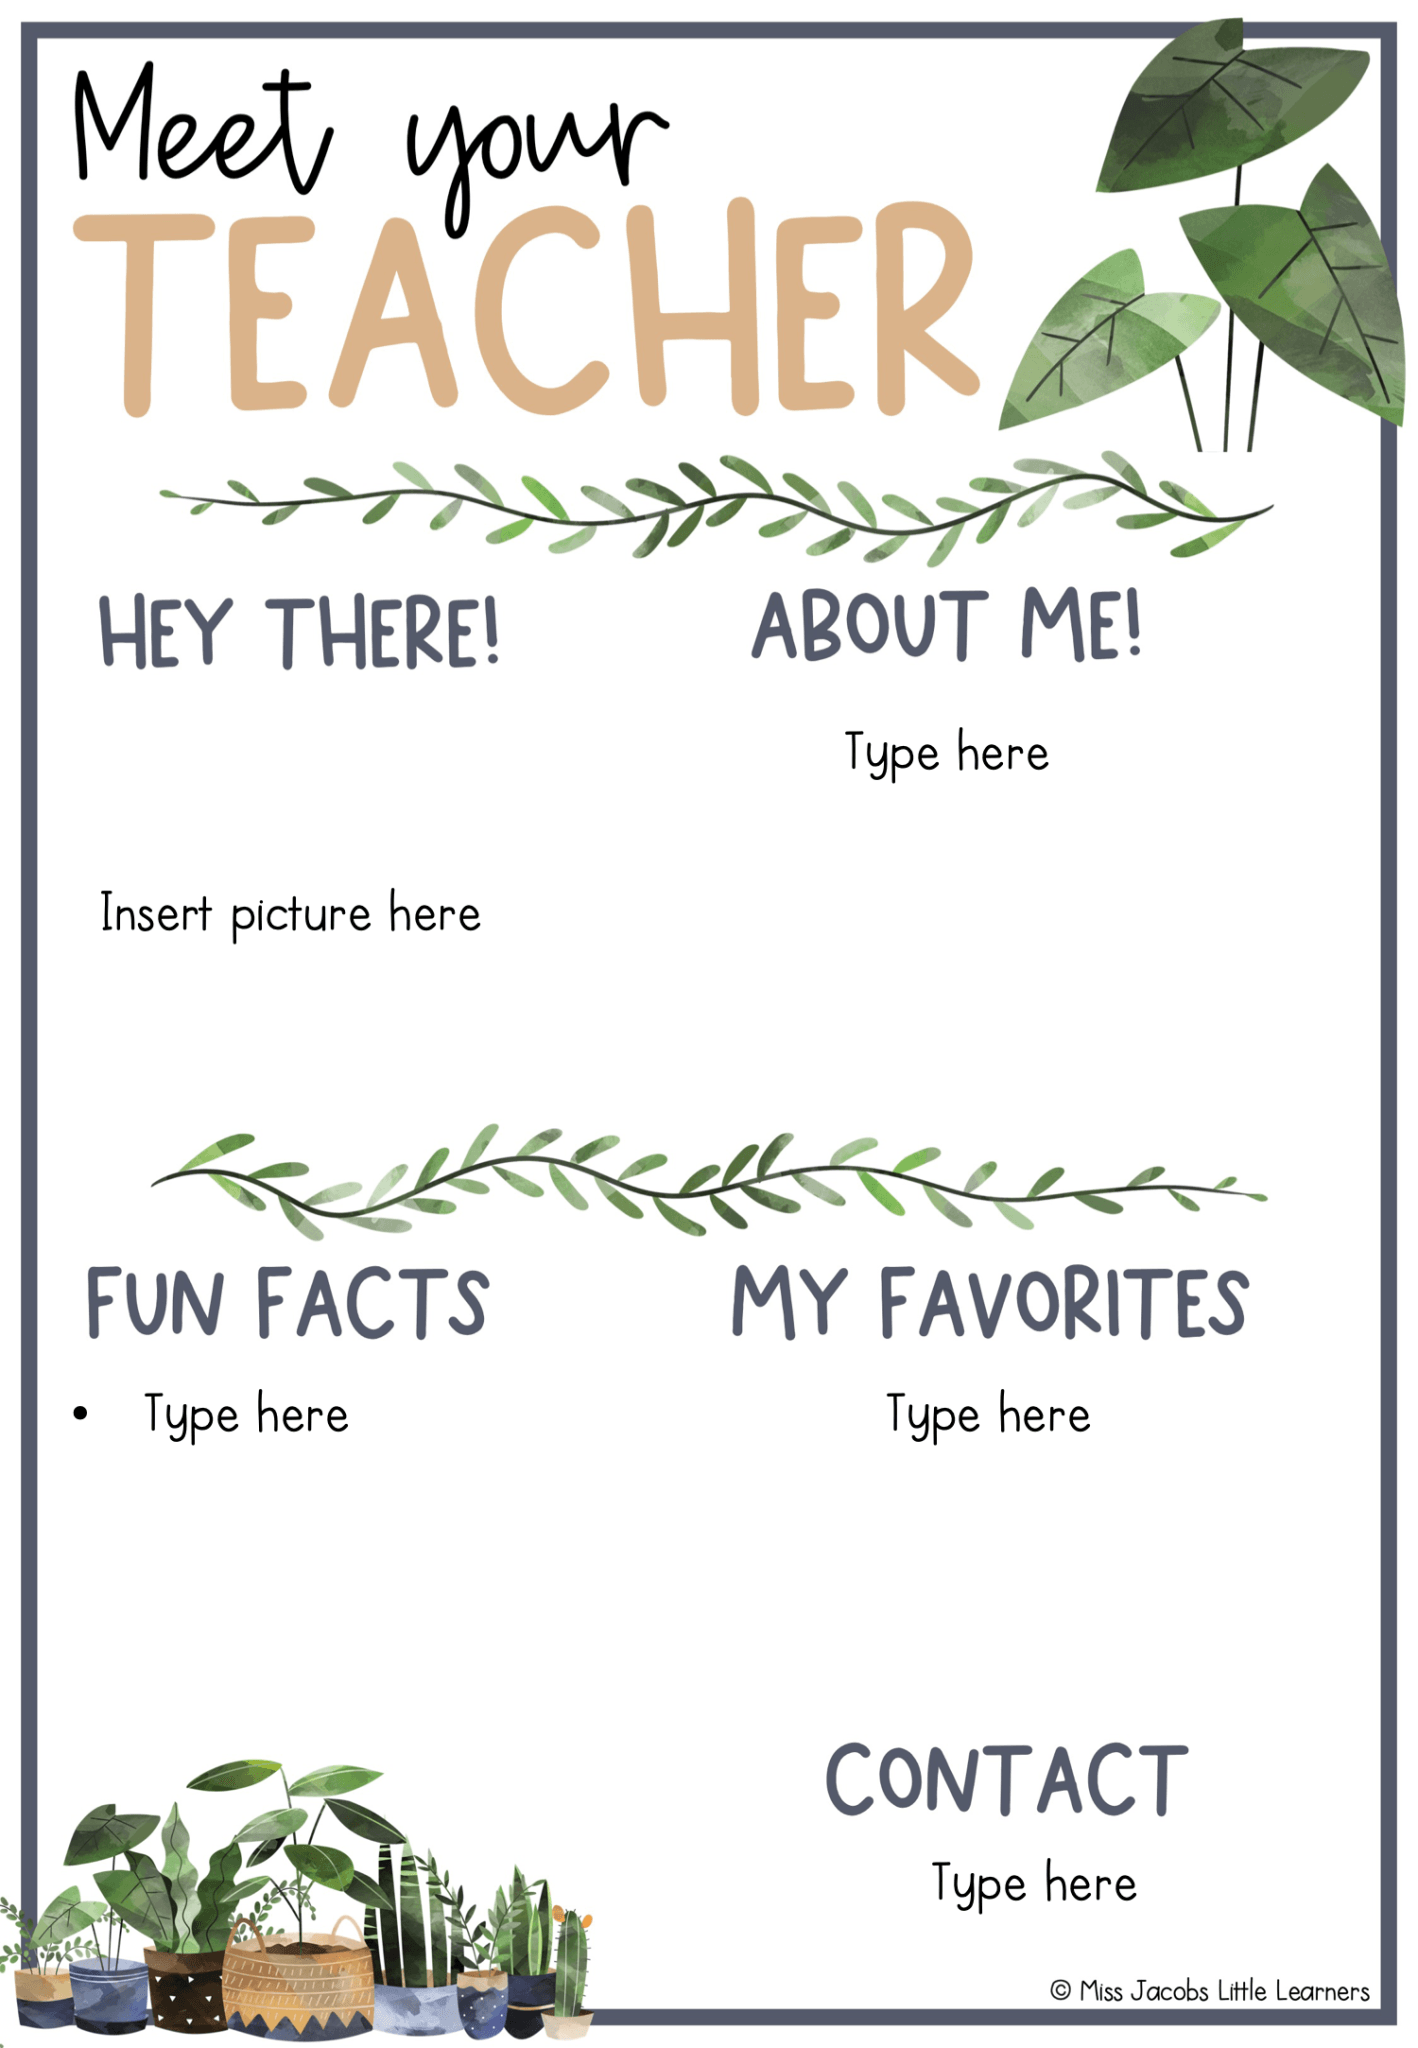 meet-the-teacher-template-miss-jacobs-little-learners-miss-jacobs-little-learners